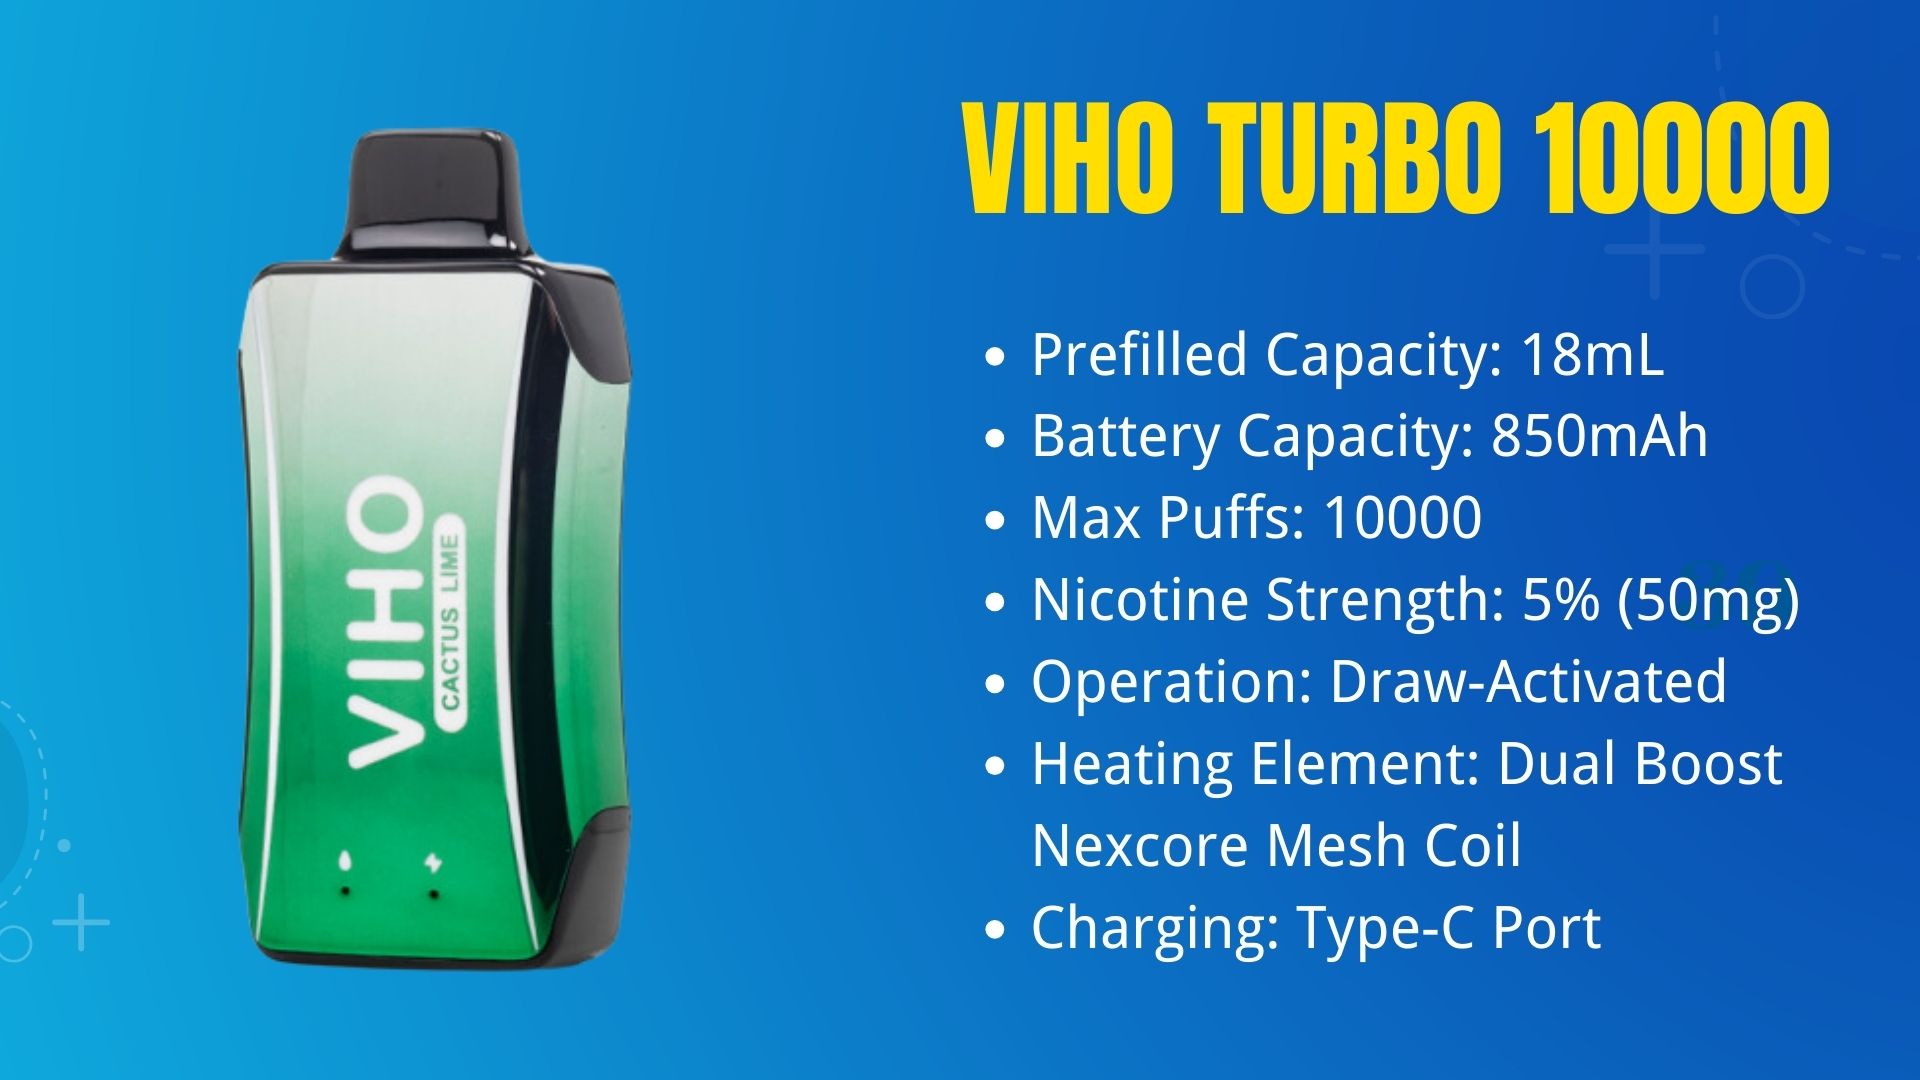 VIHO Turbo 10000 puffs